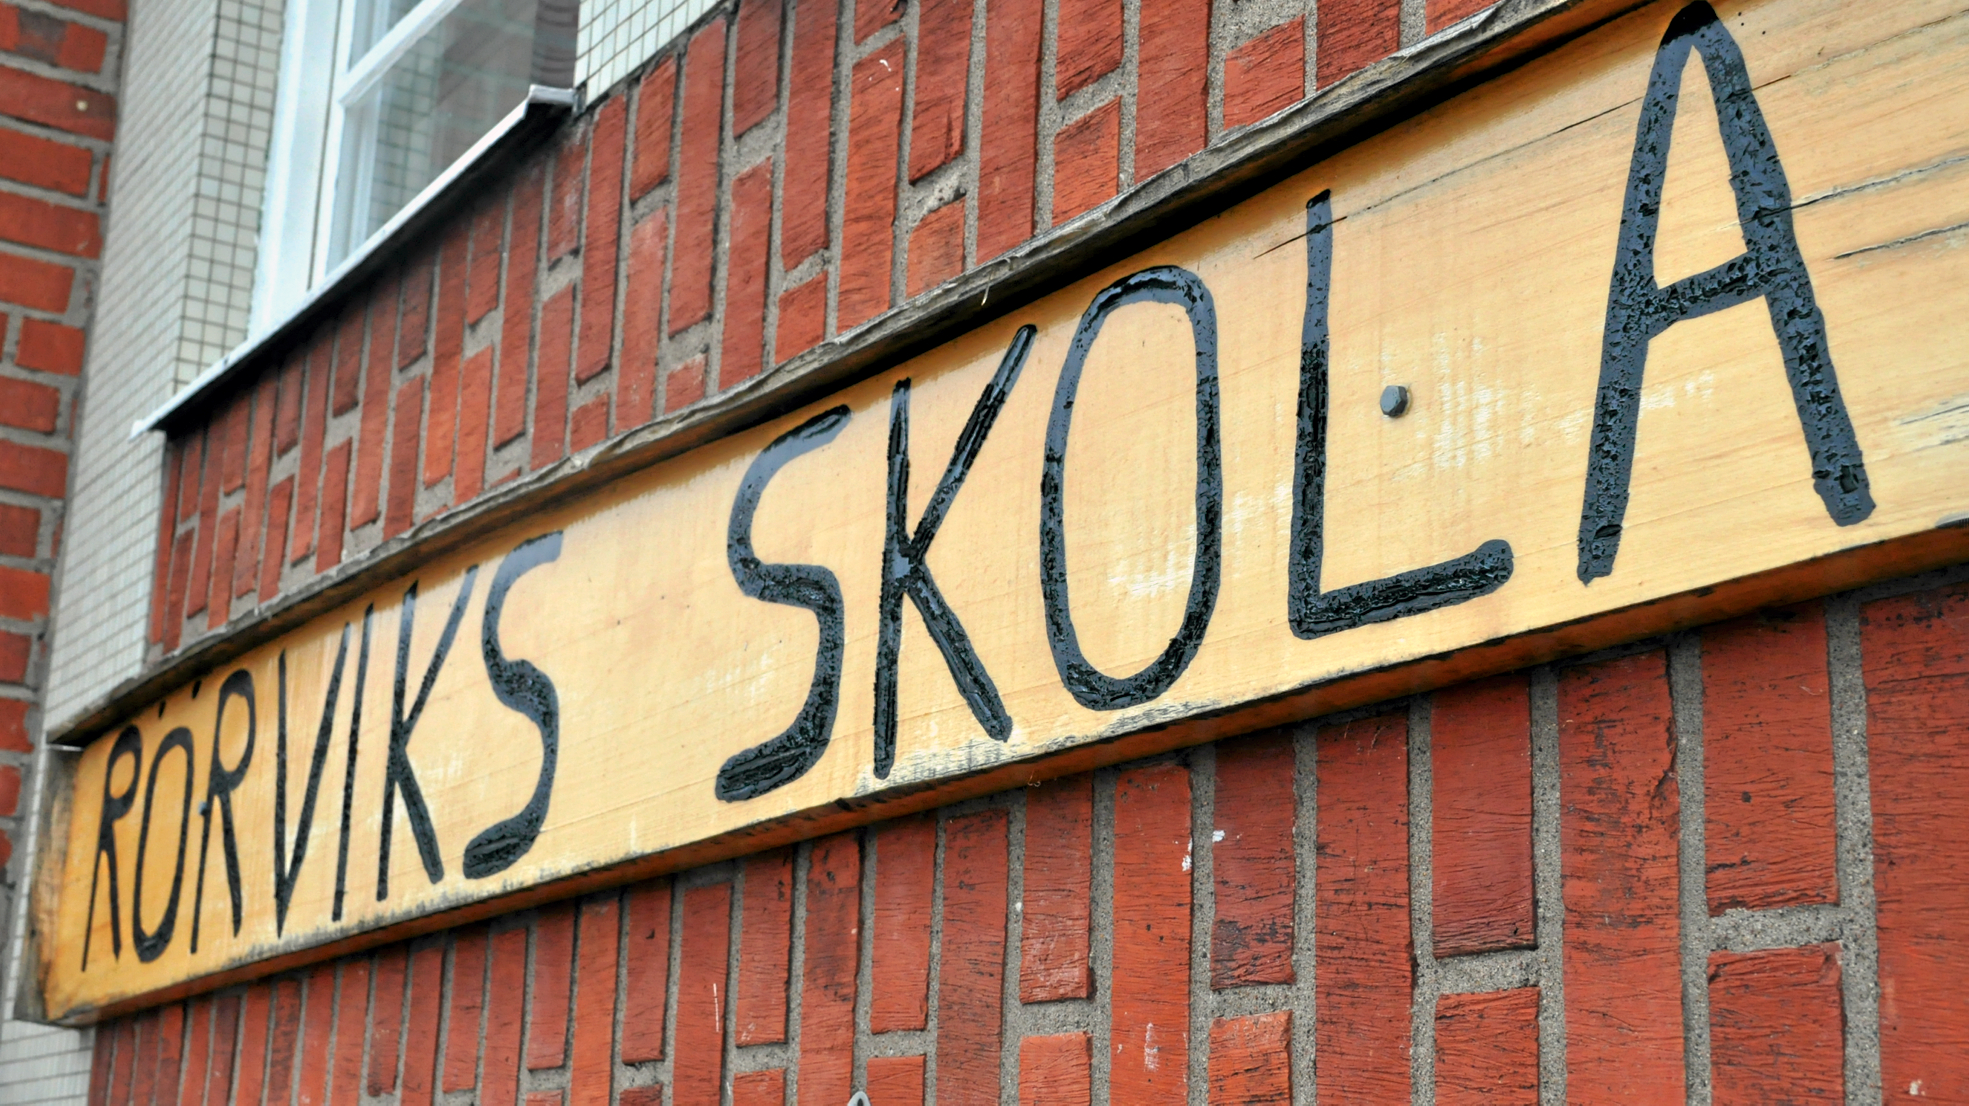 Konst på Rörviks skola presenterades - Sävsjö kommun